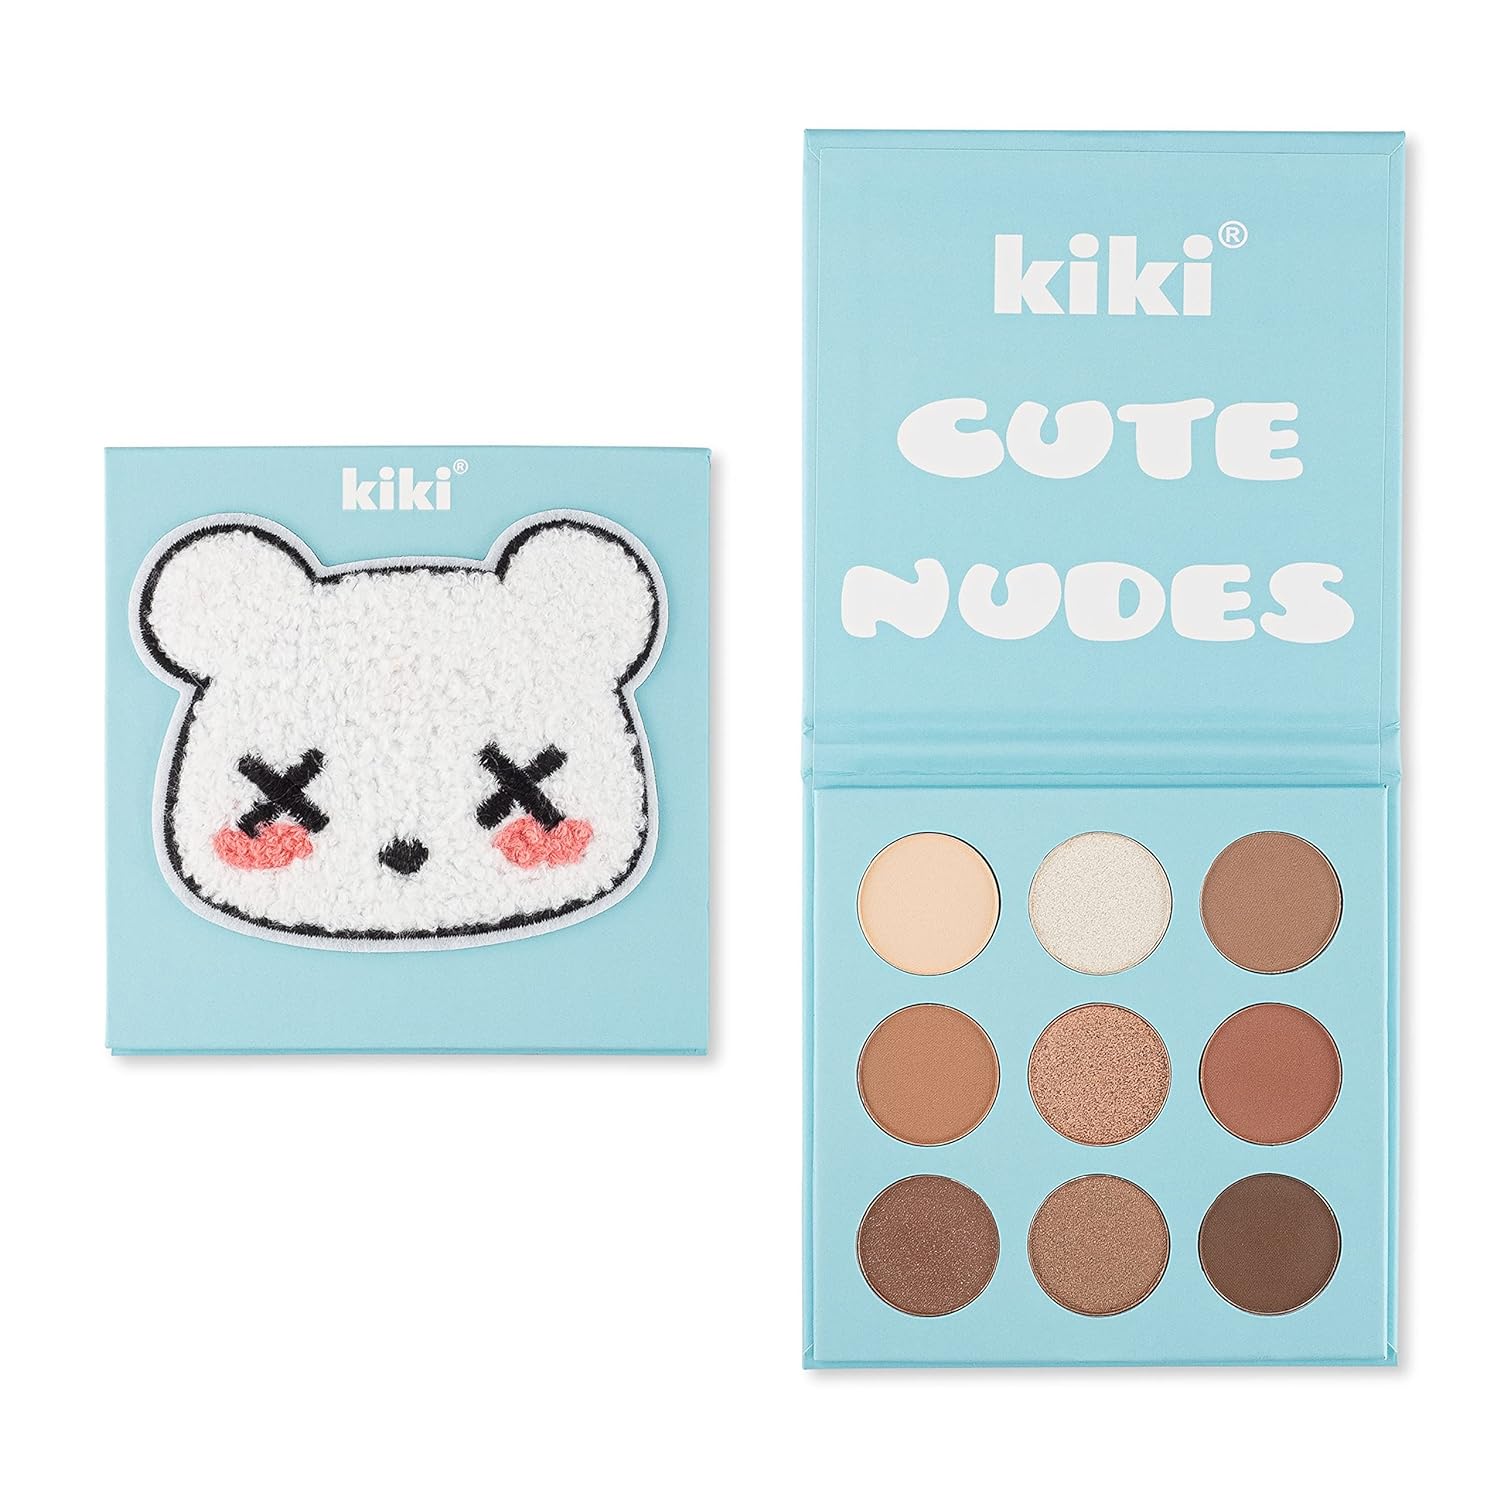 kiki Eyeshadow Pallet in Cute Nudes